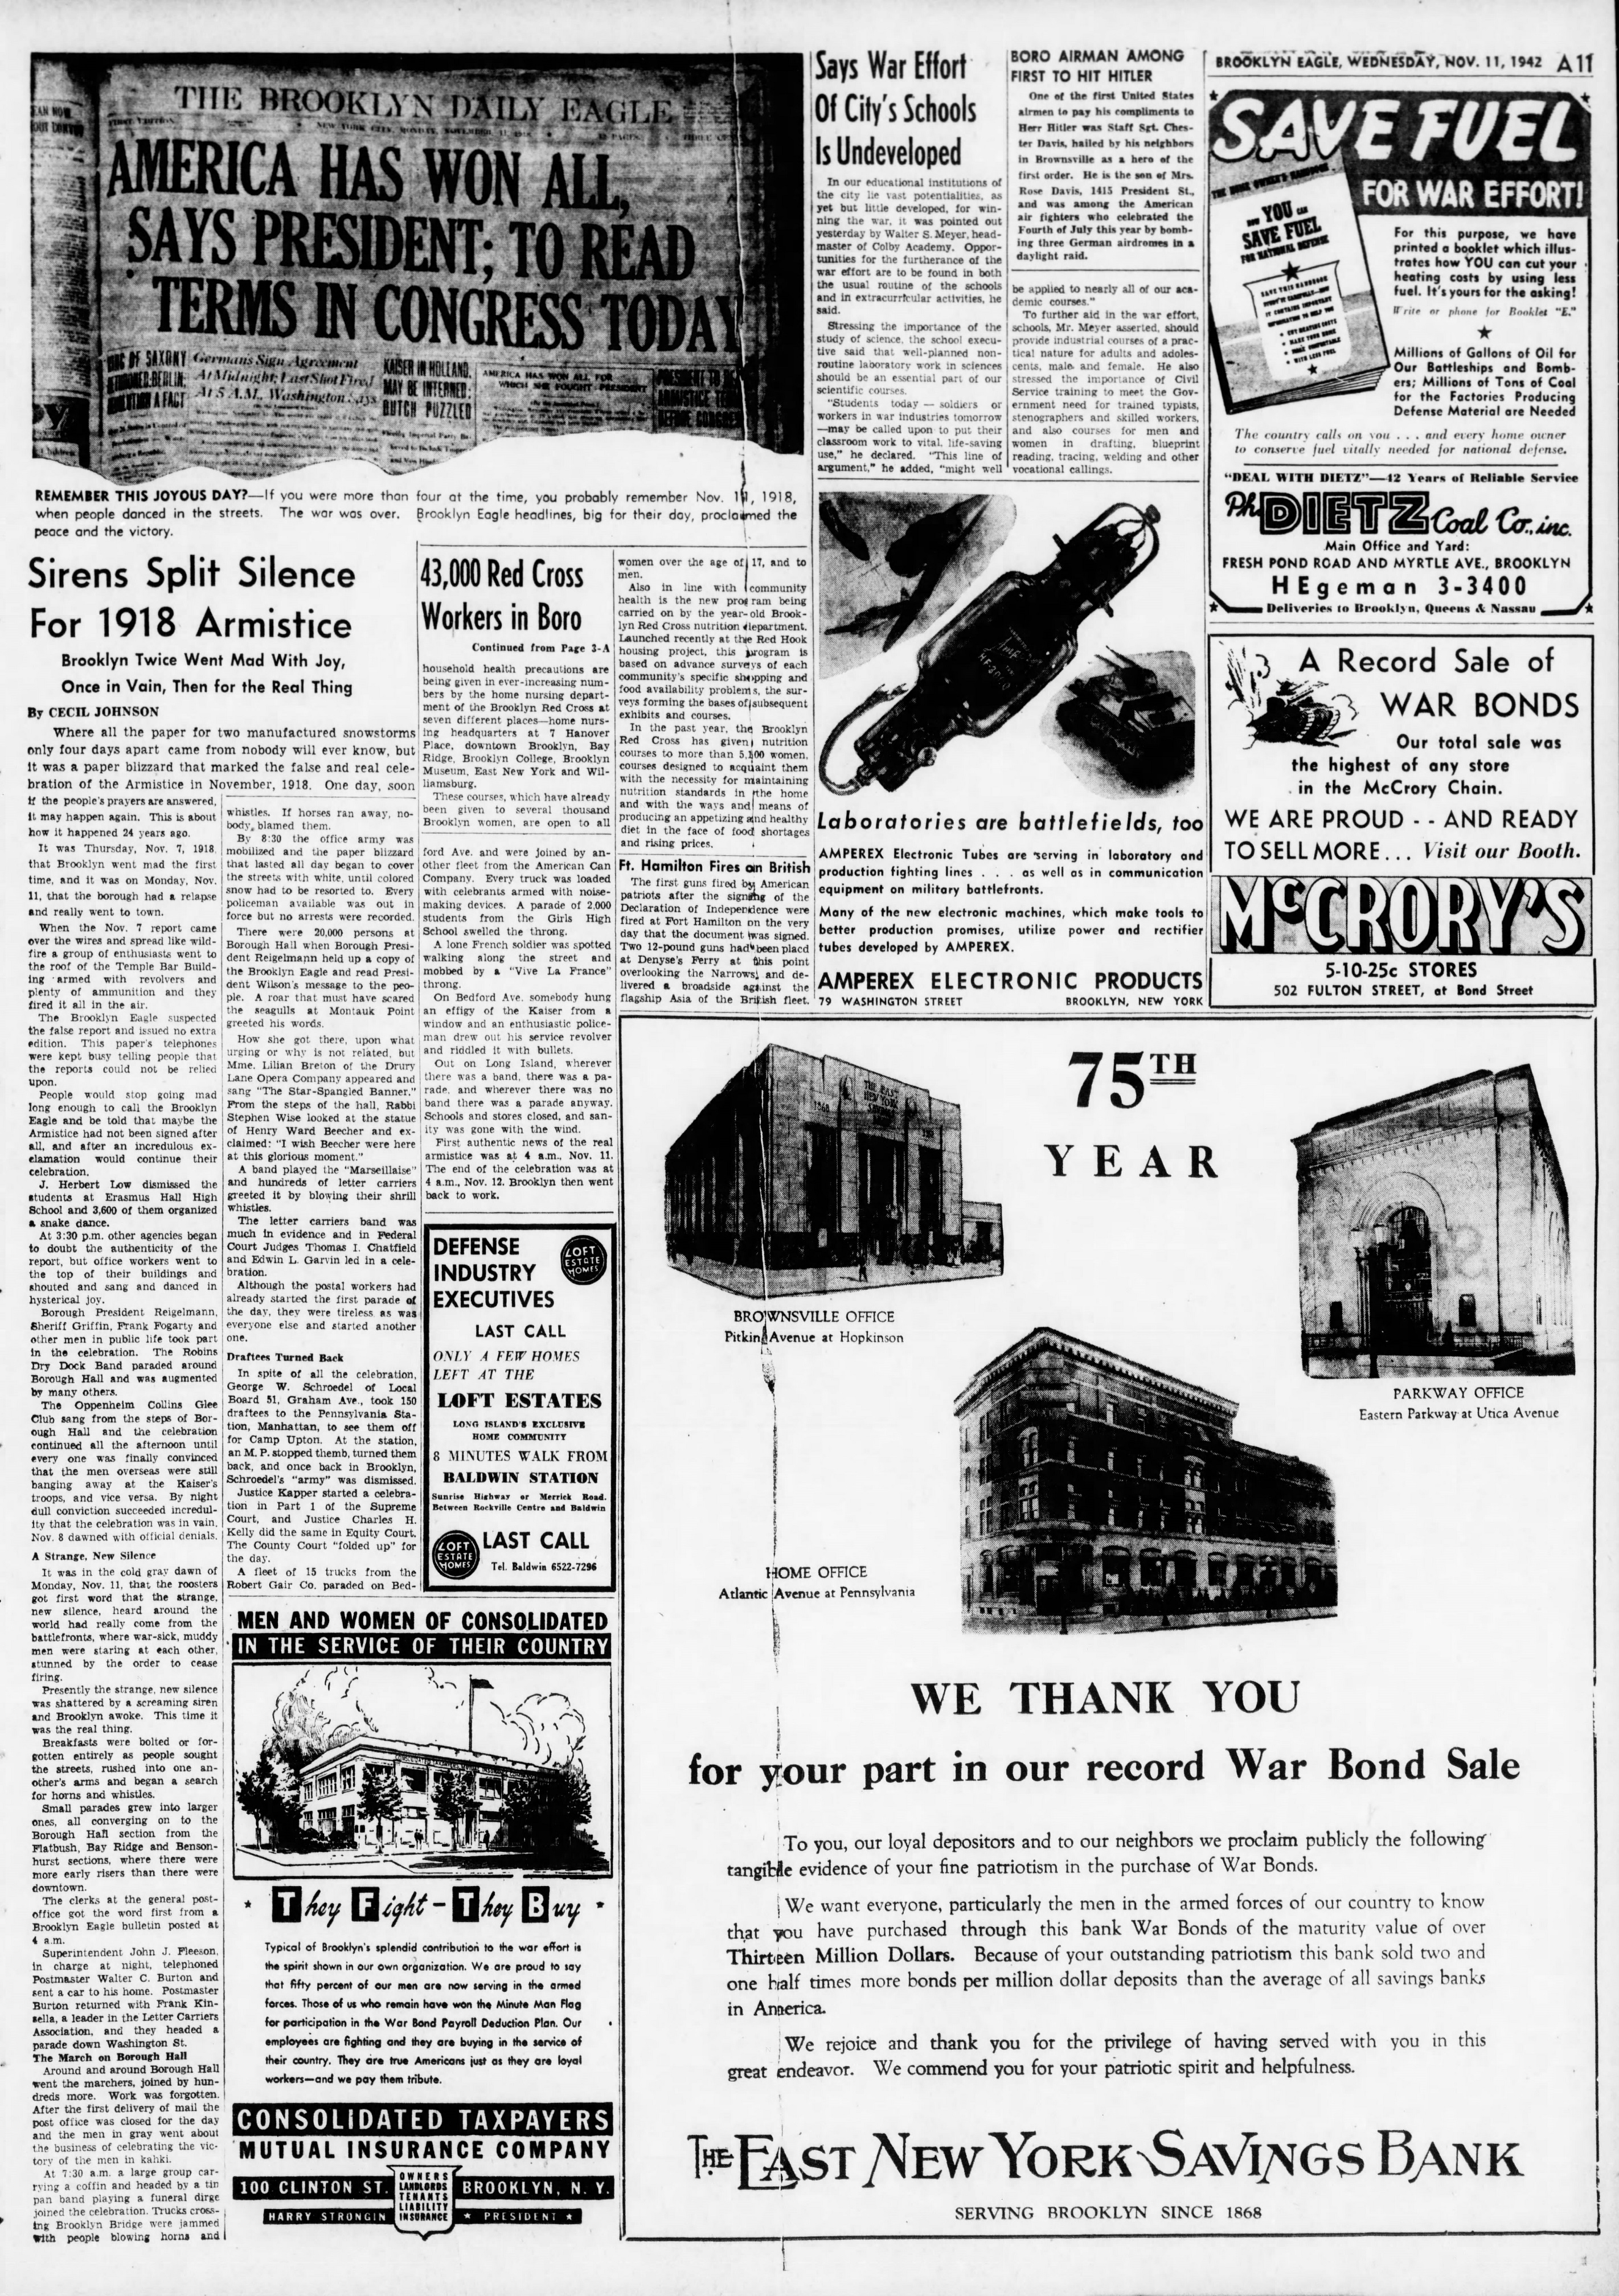 The_Brooklyn_Daily_Eagle_Wed__Nov_11__1942_(12).jpg